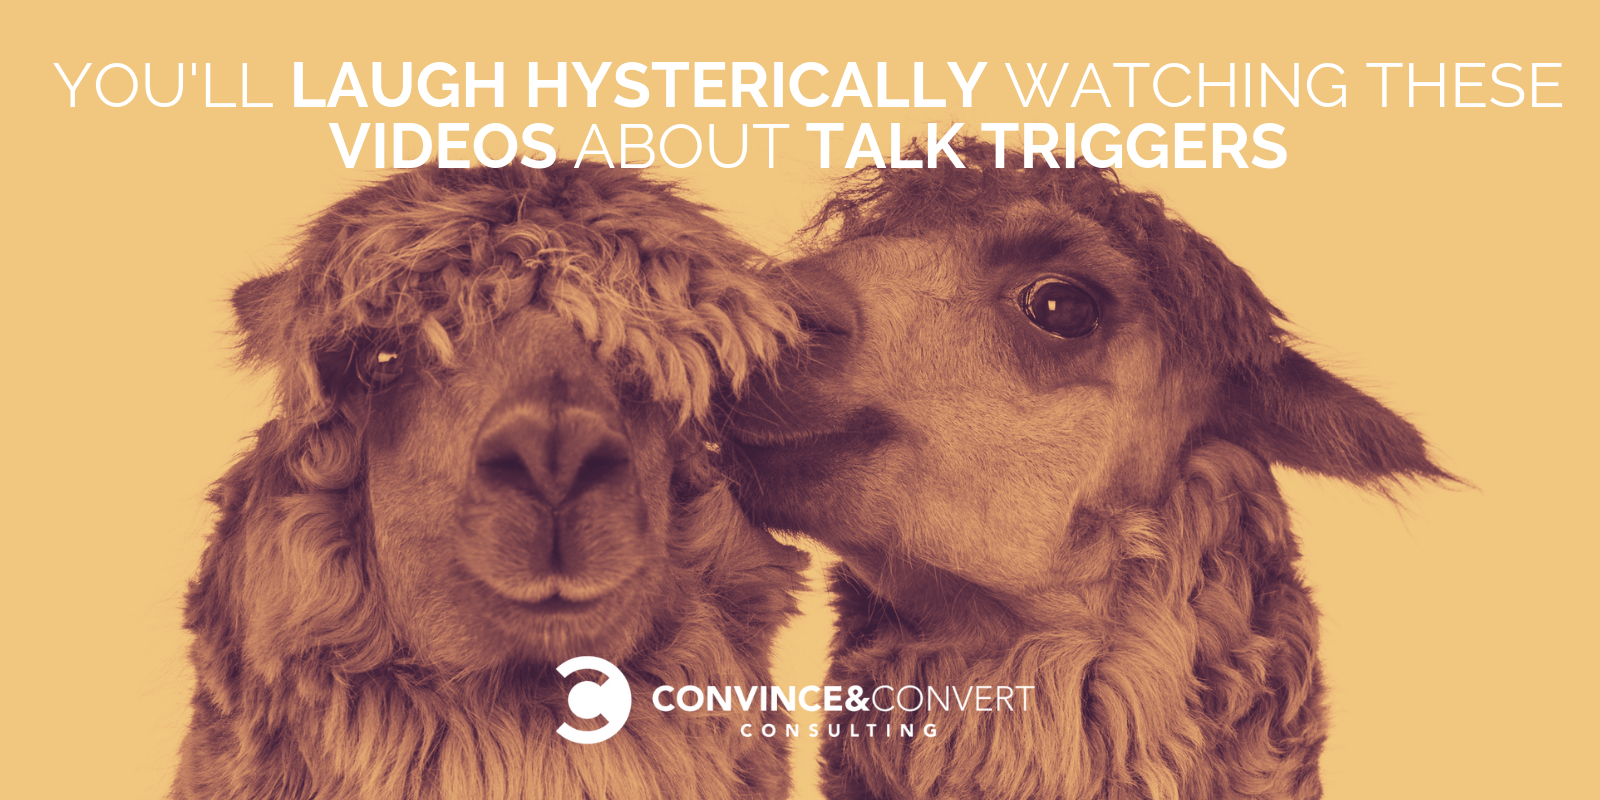 talk triggers videos